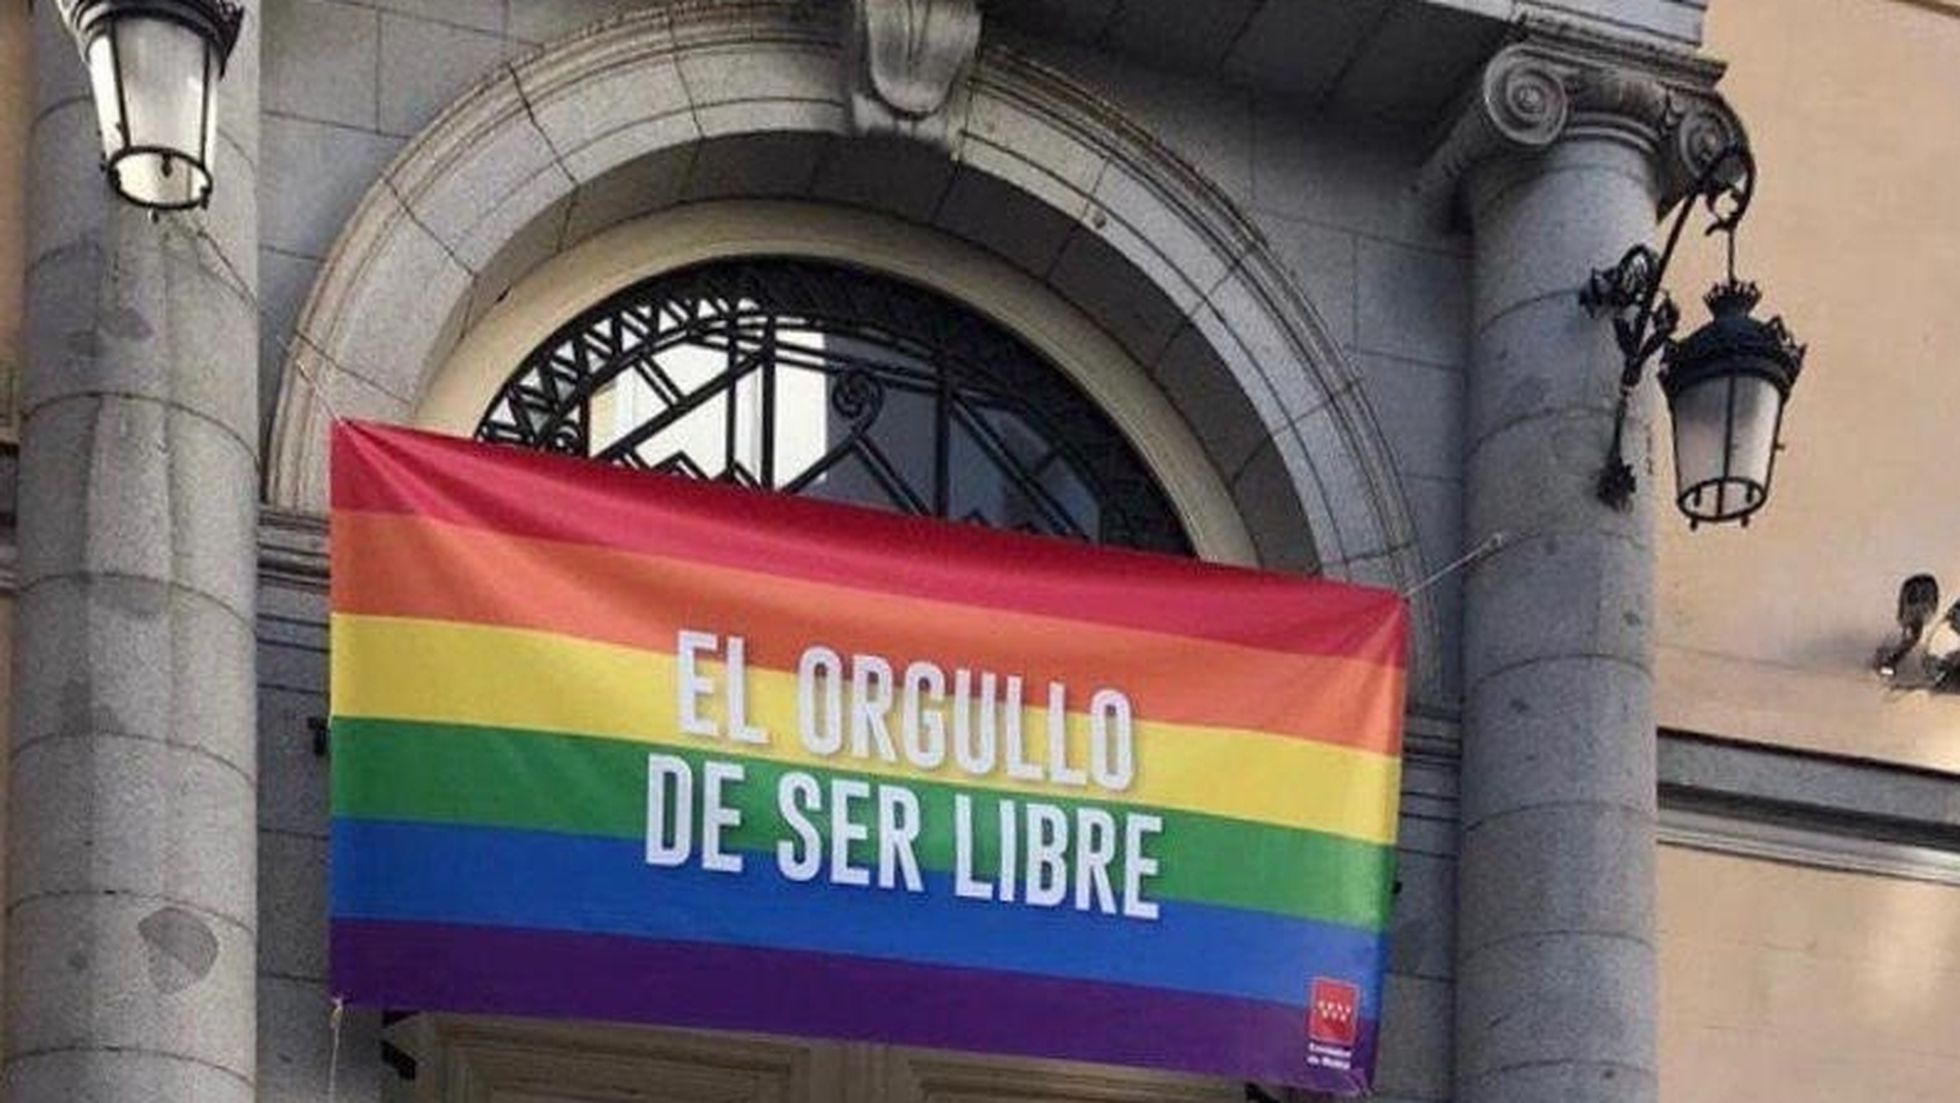 Campaña política en Madrid, ¿dónde queda el LGTB+?